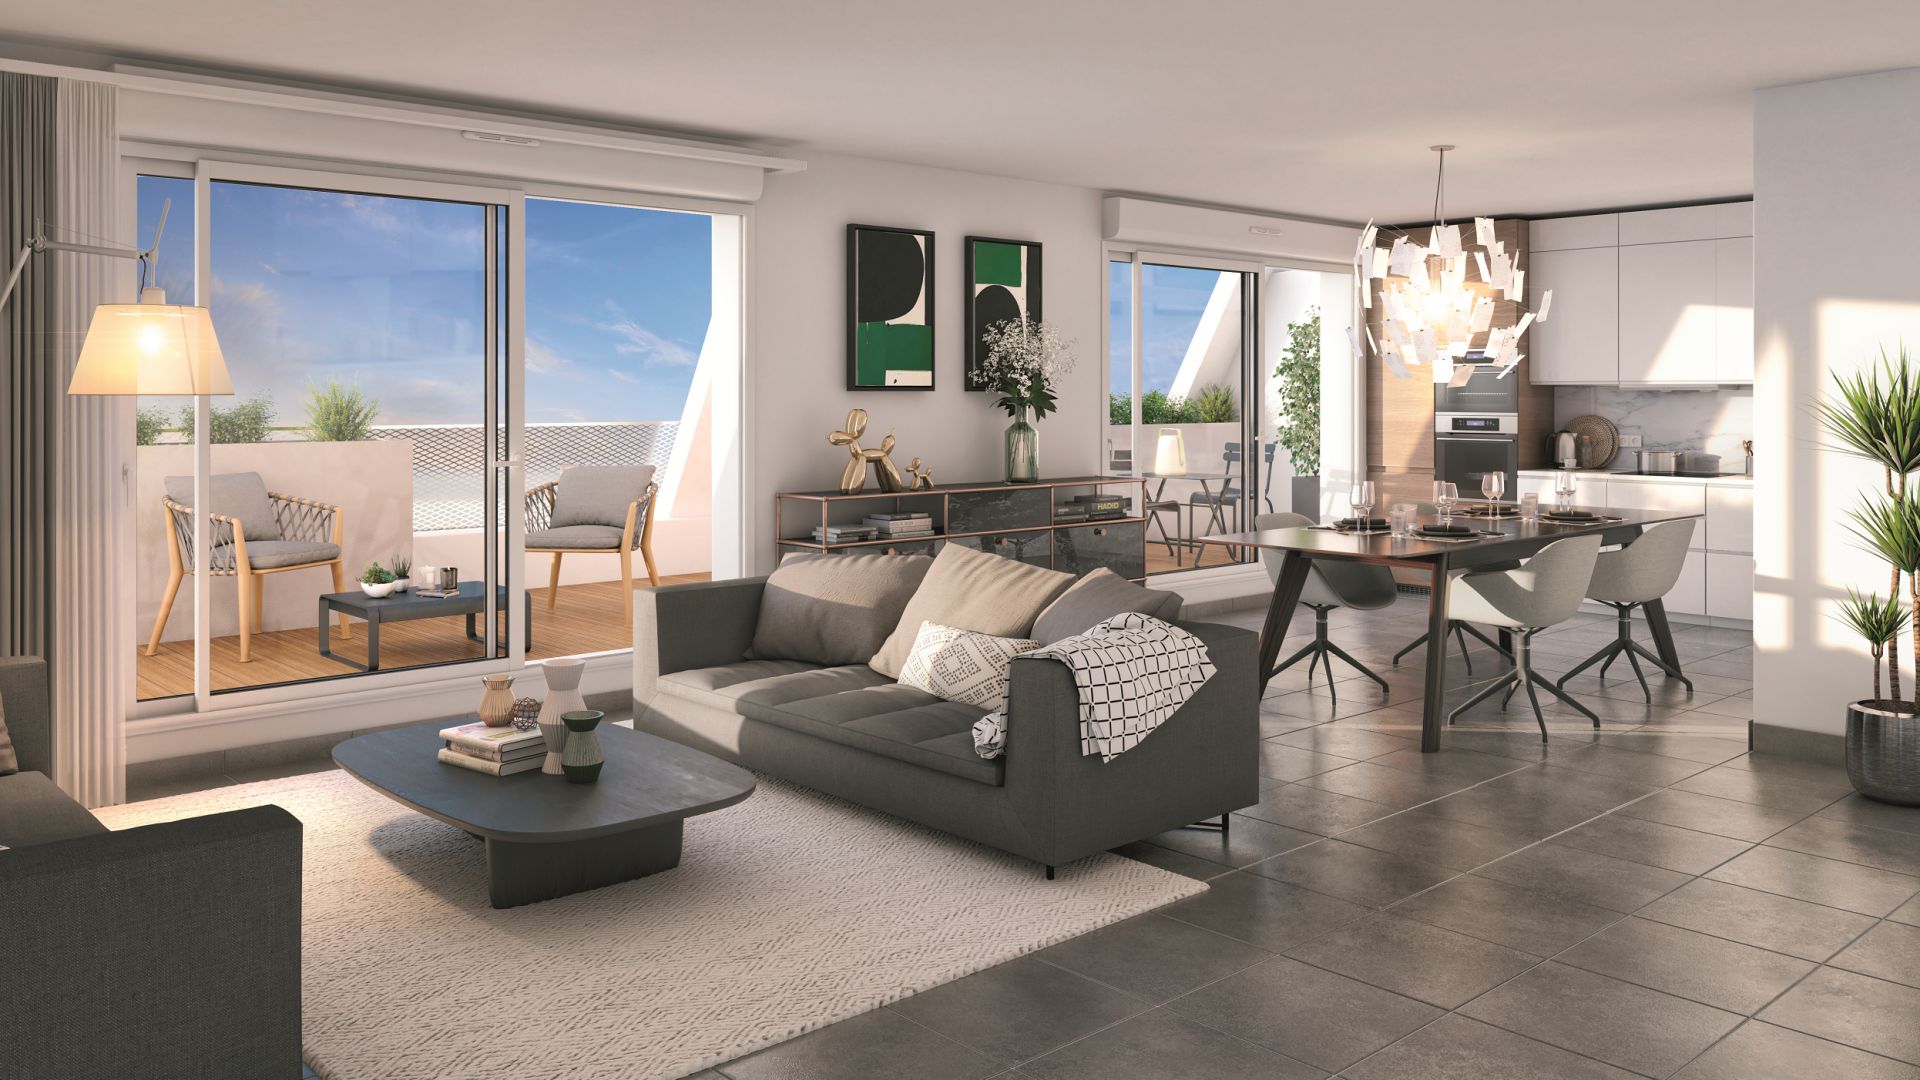 Greencity immobilier - achat appartements neufs du T1Bis au T6Duplex - Résidence MeetCity - 31700 Beauzelle - vue intérieure